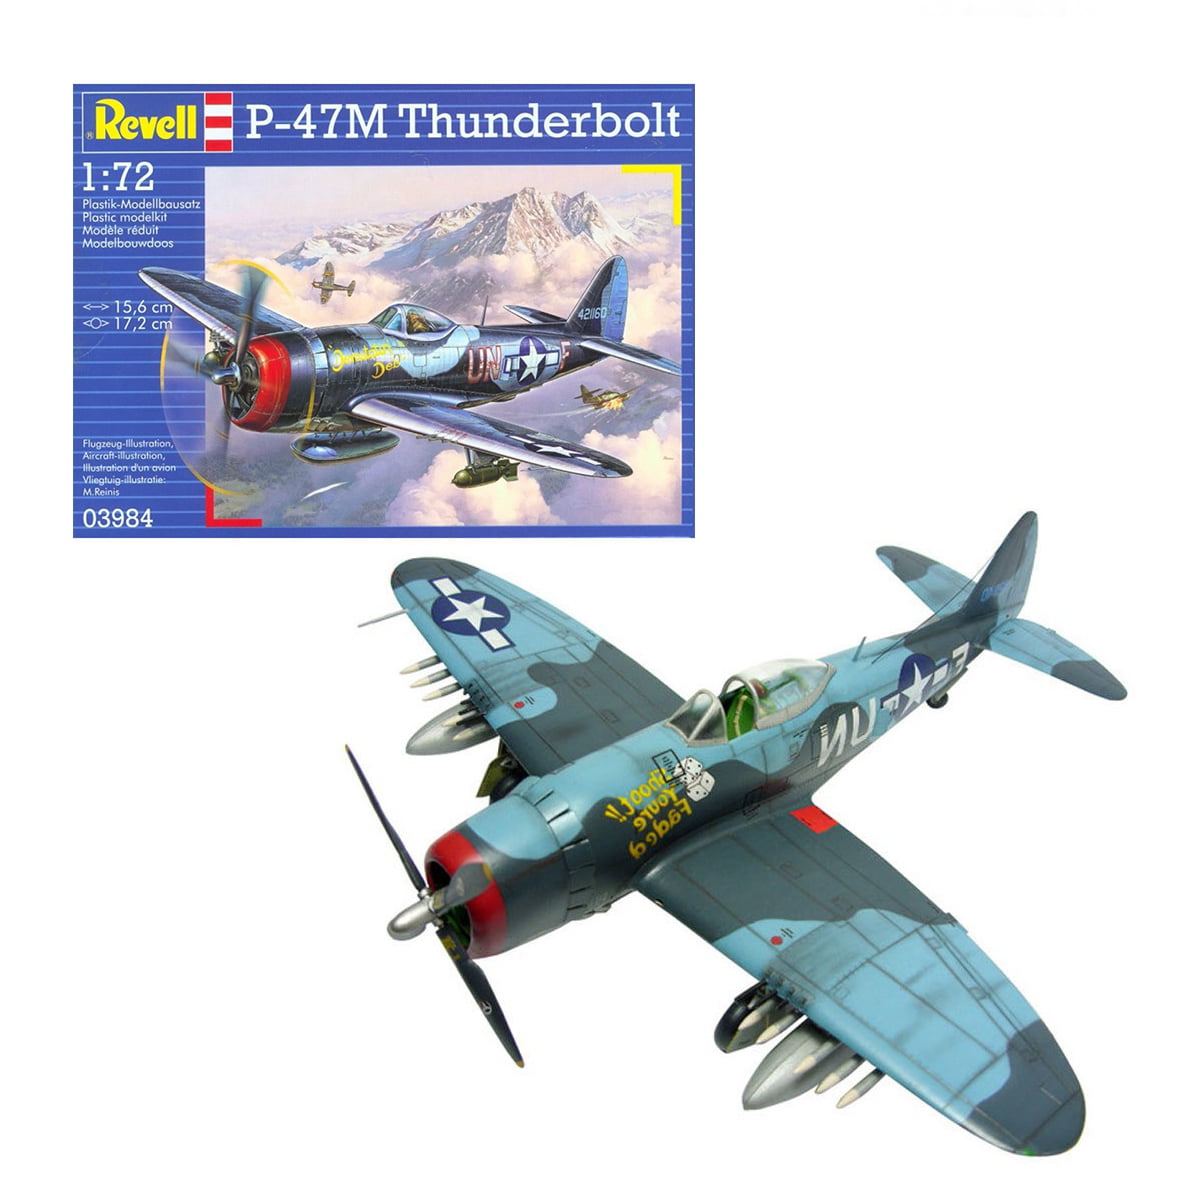 63984 Maquette Revell Model Set P-47M Thunderbolt